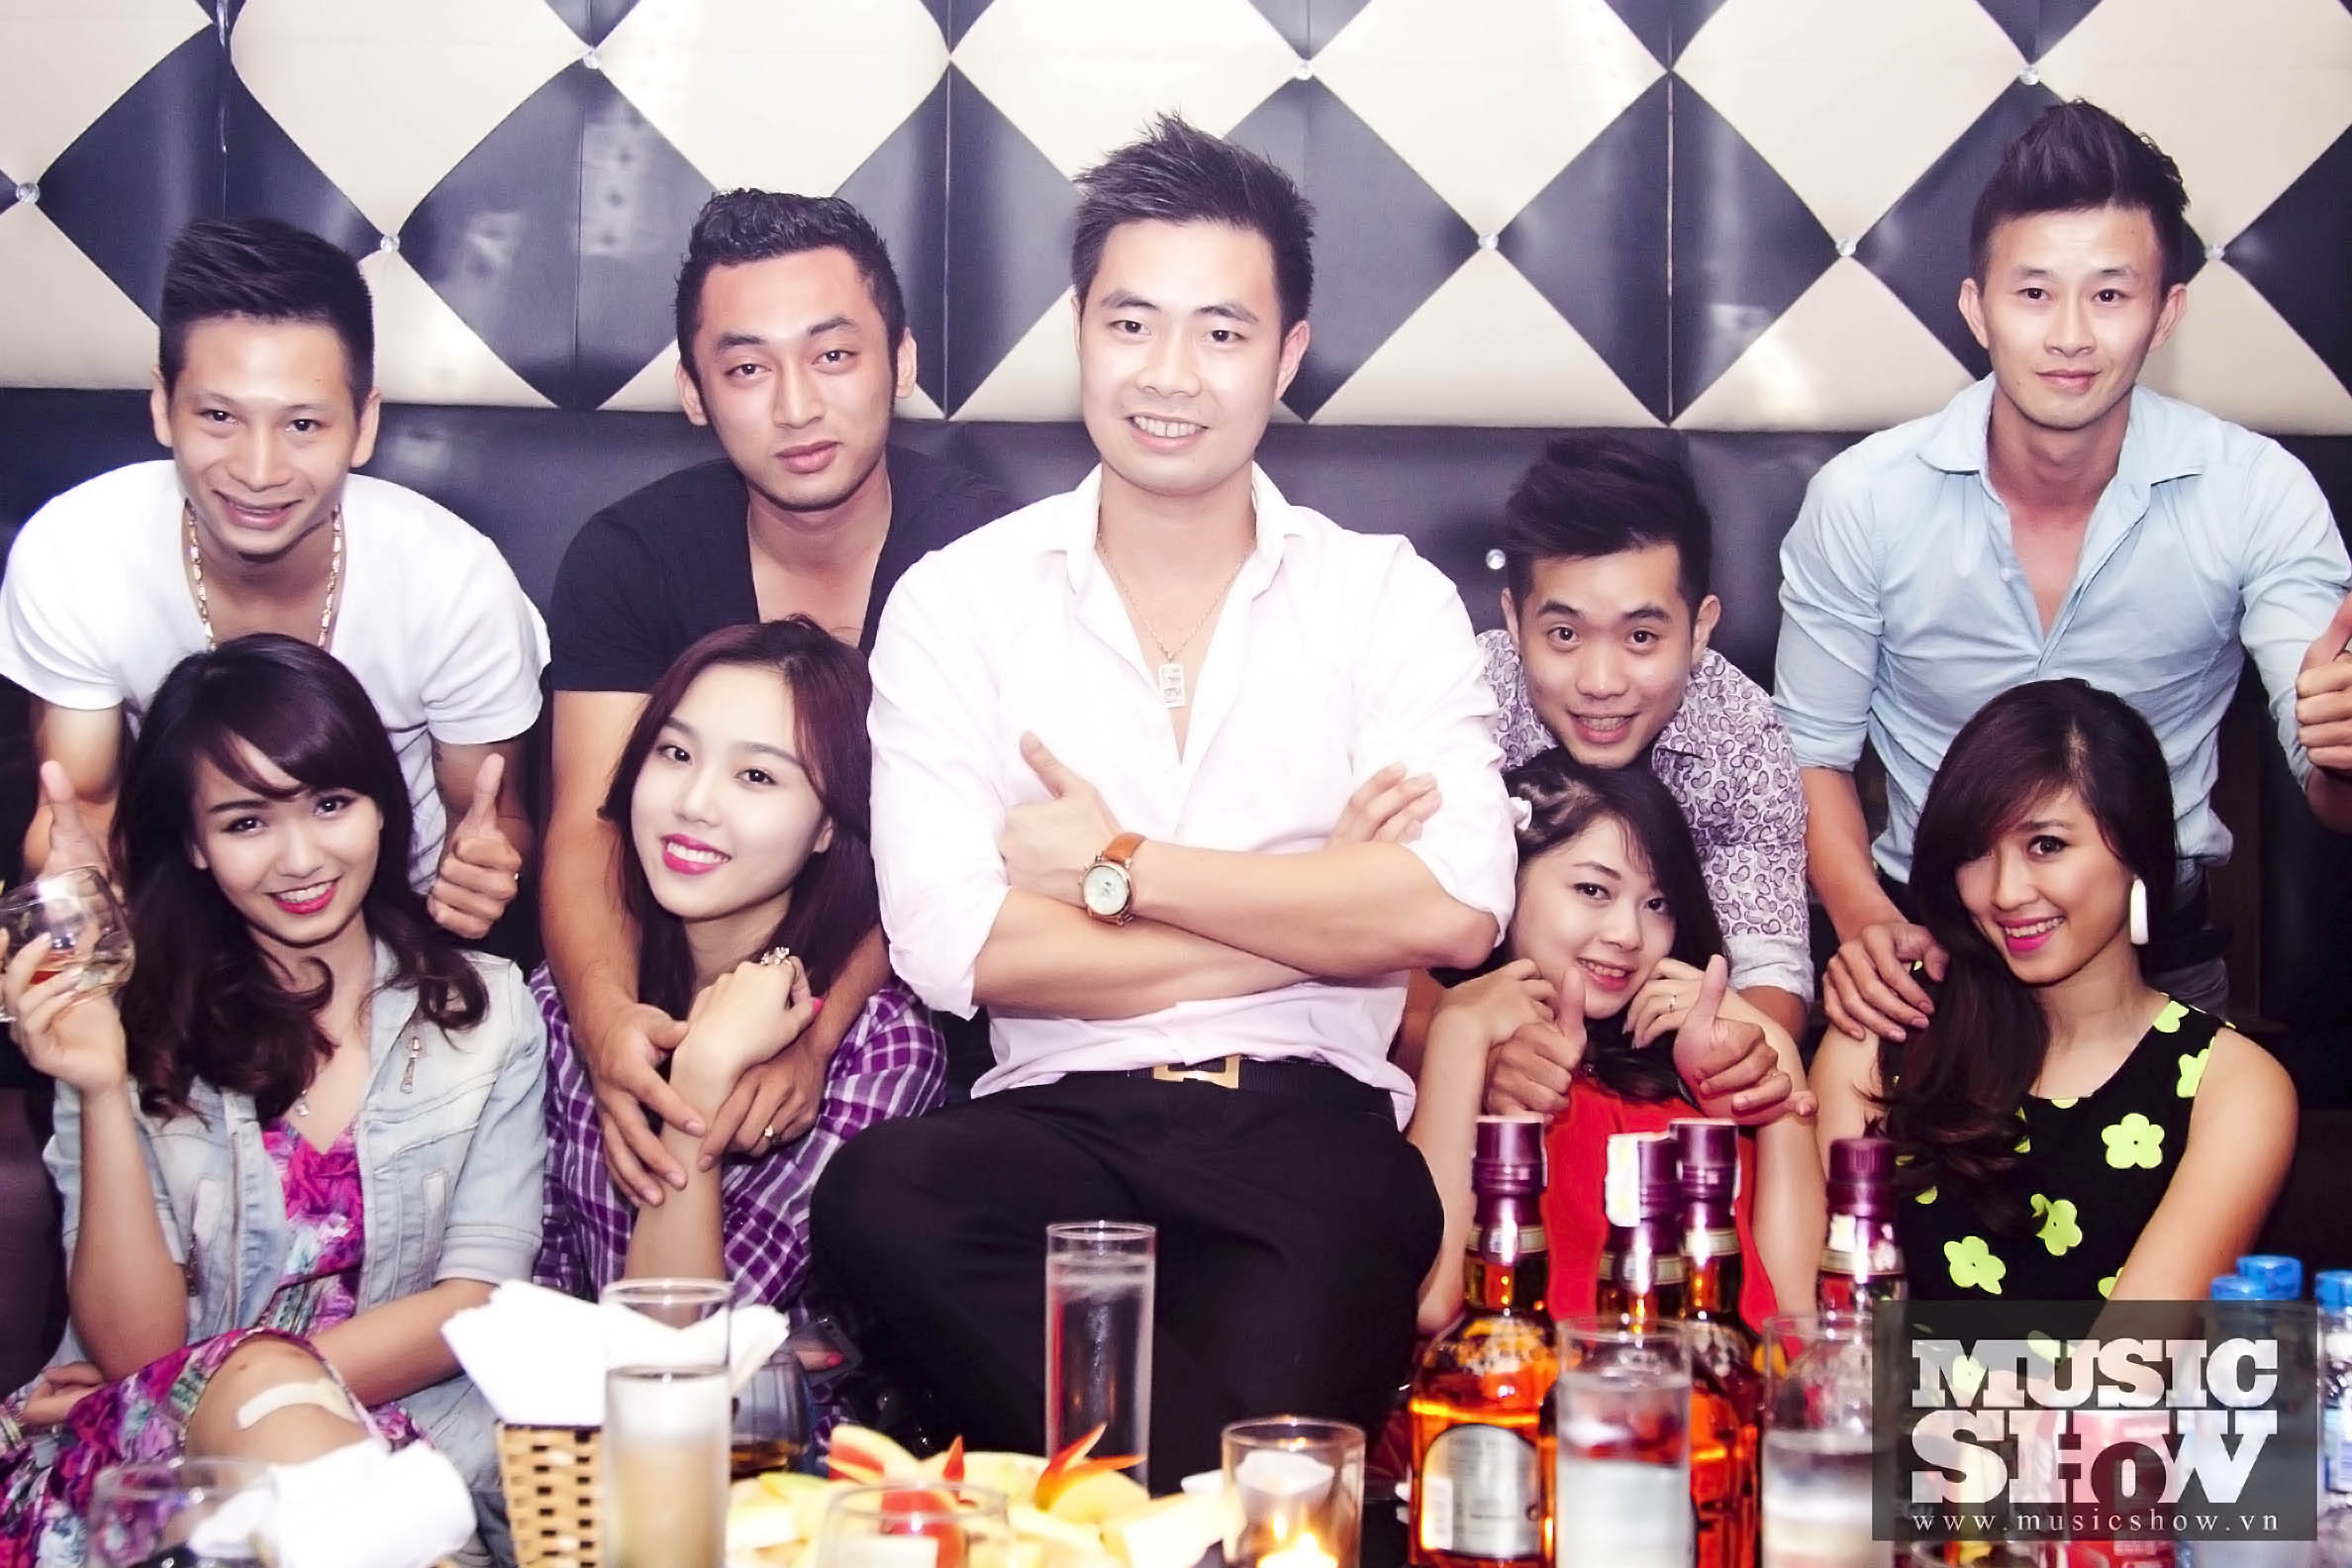 Cao Thái Sơn in Luxury Club 05/10/2013 2